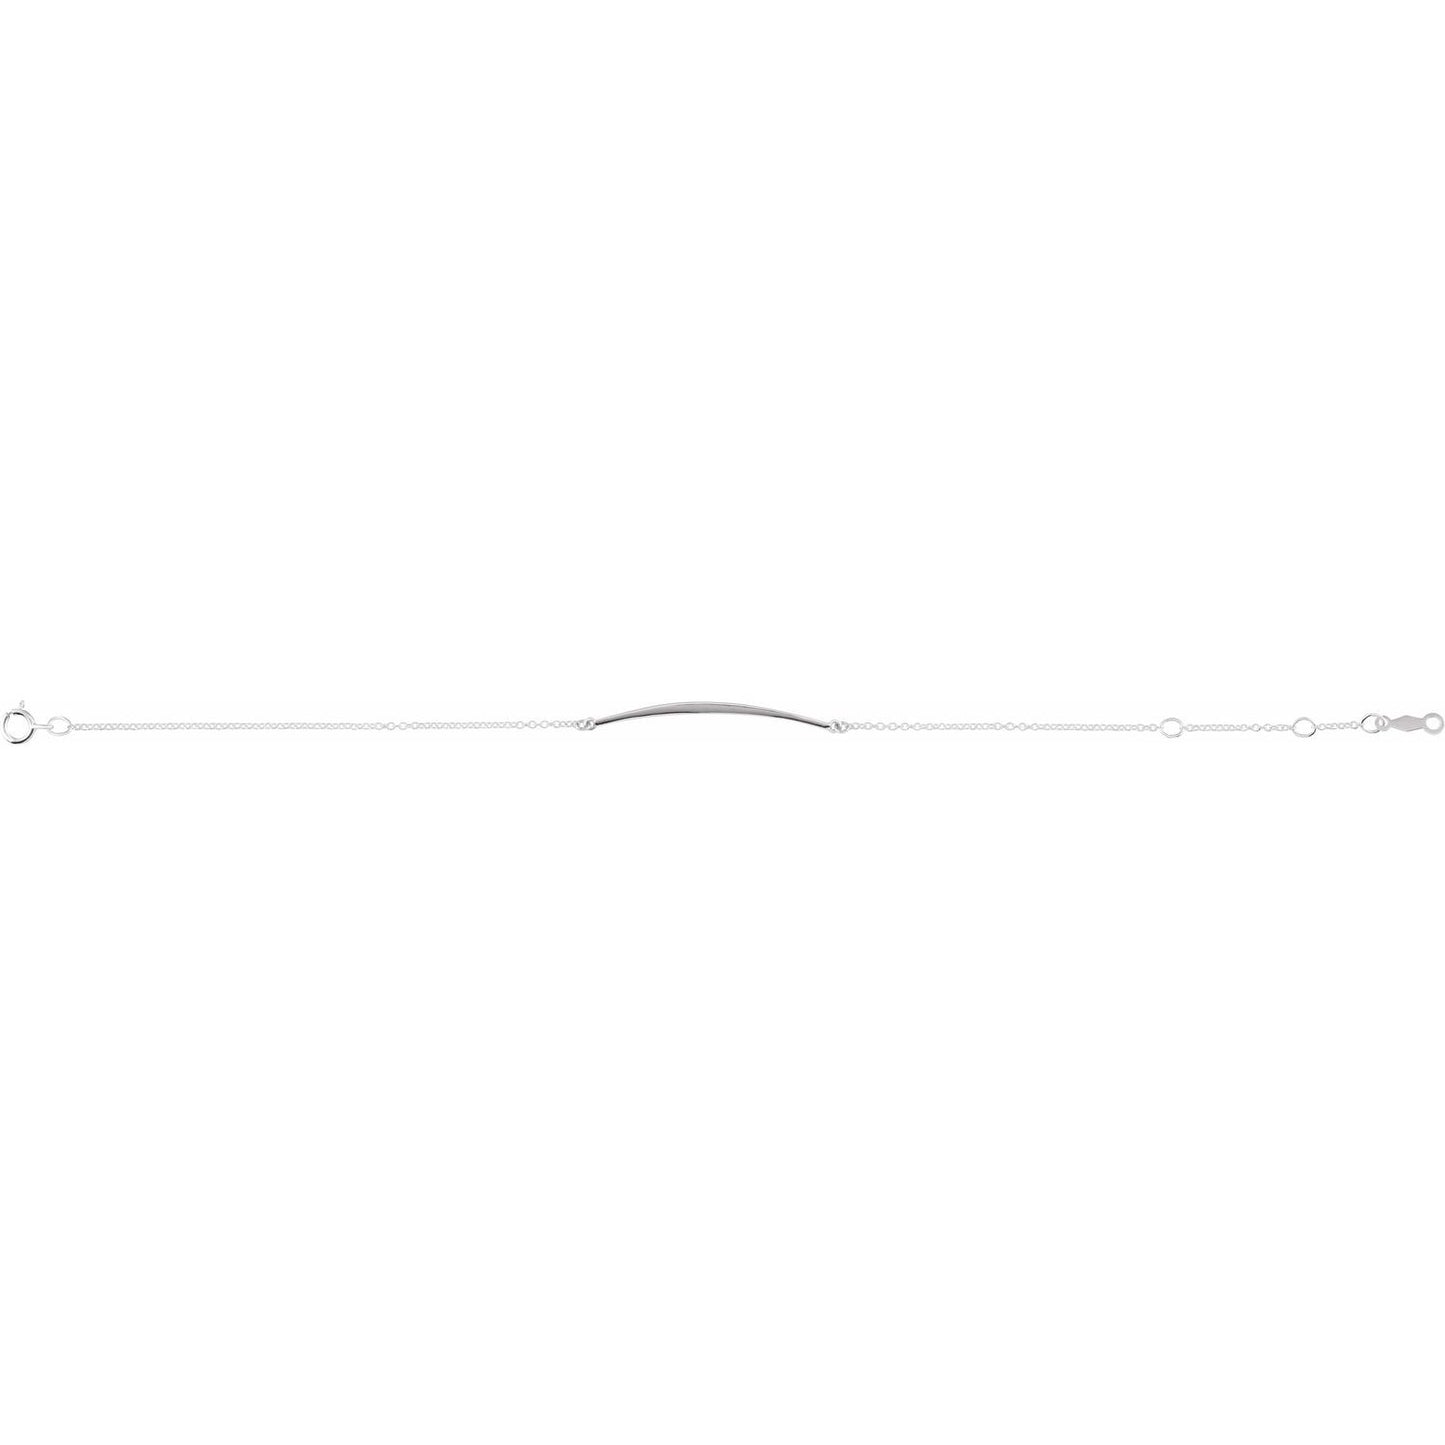 Sterling Silver Curved Bar 6 1/2-7 1/2" Bracelet